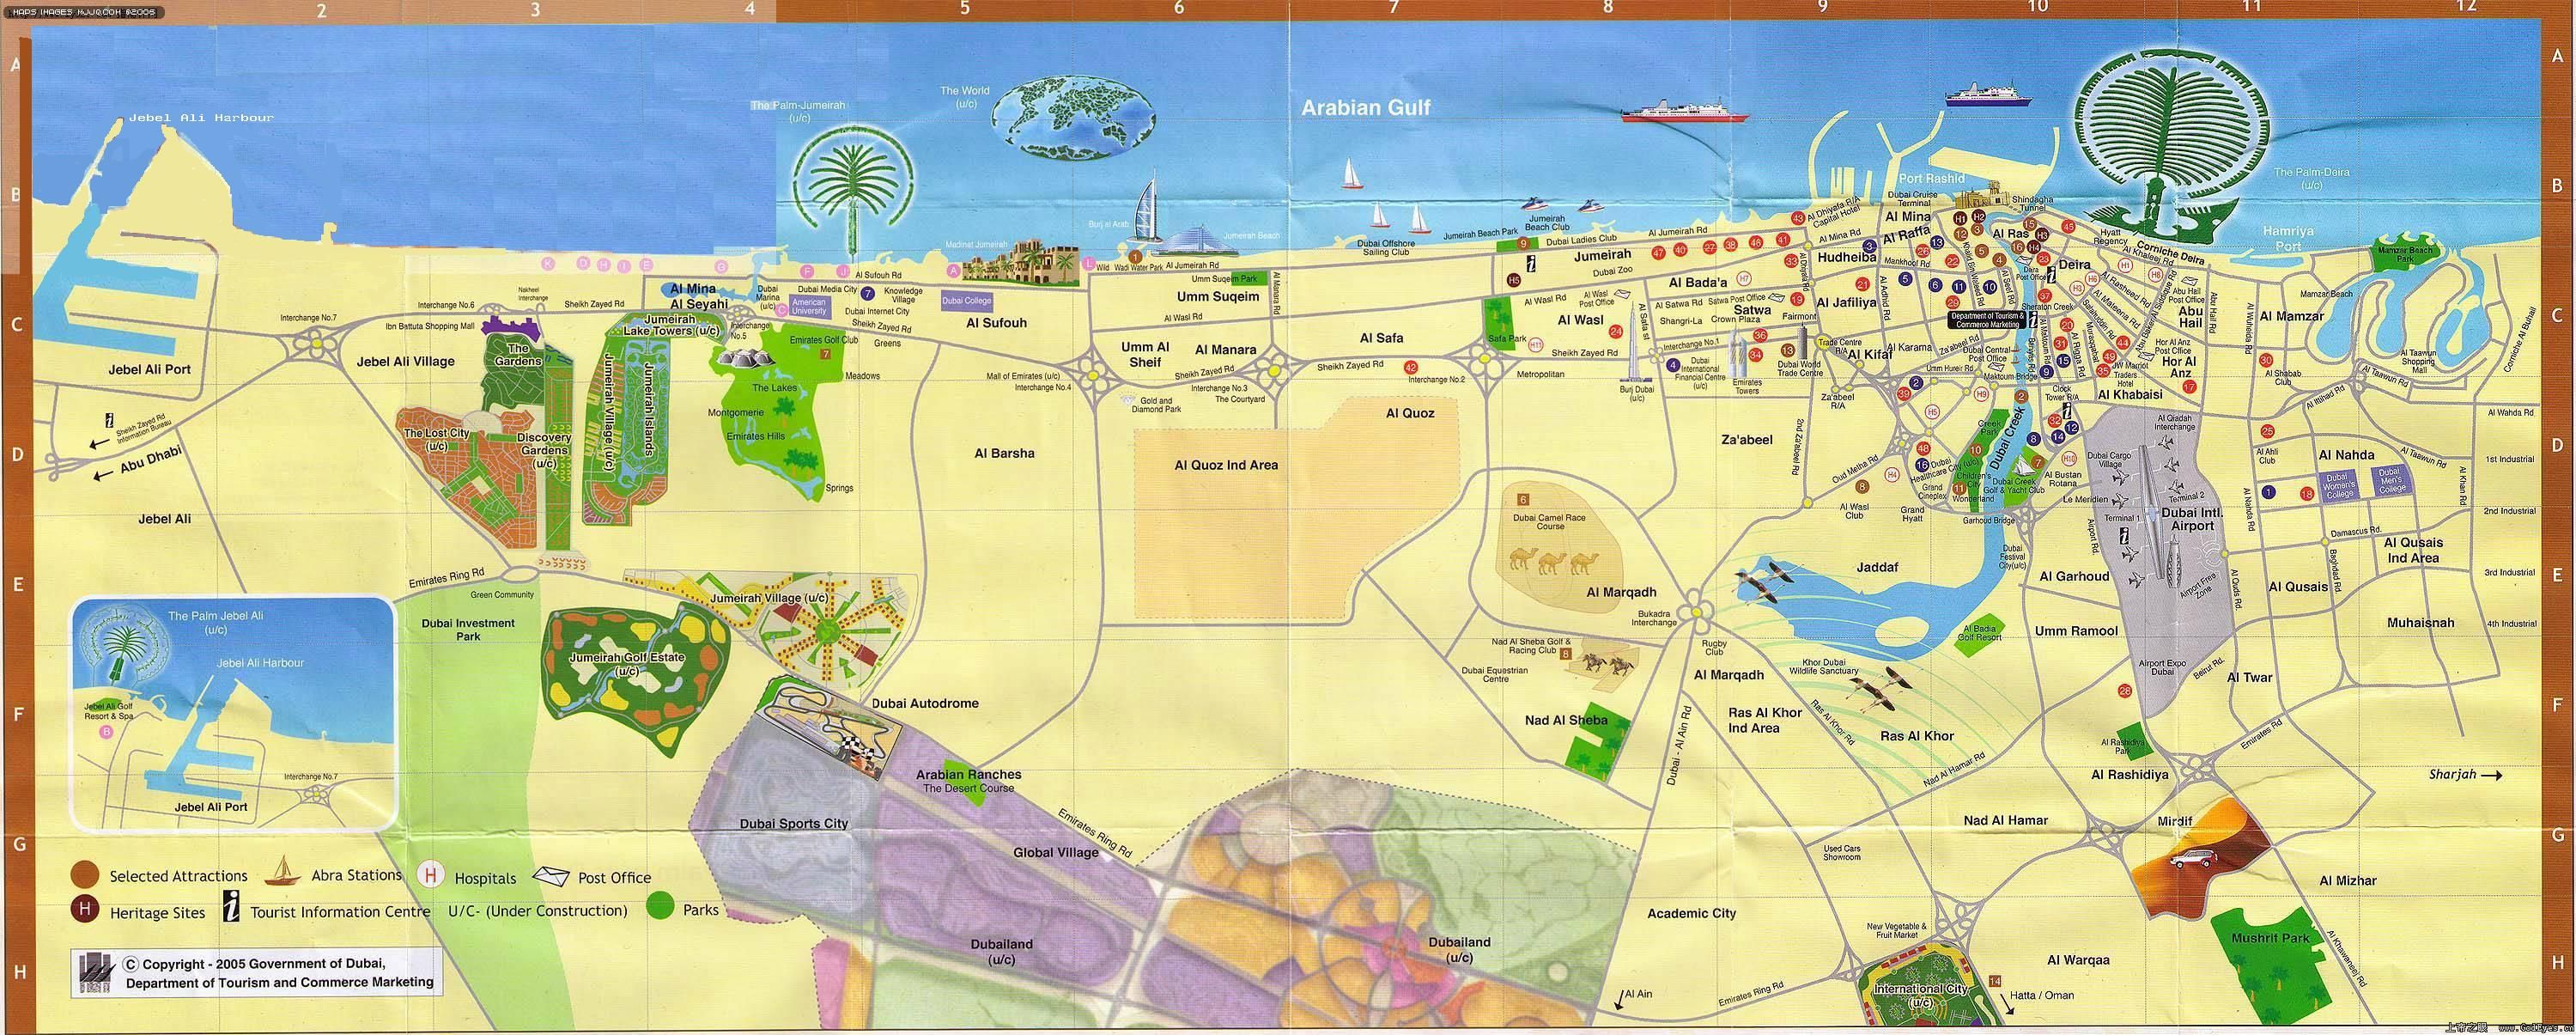 阿联酋迪拜地图英文版